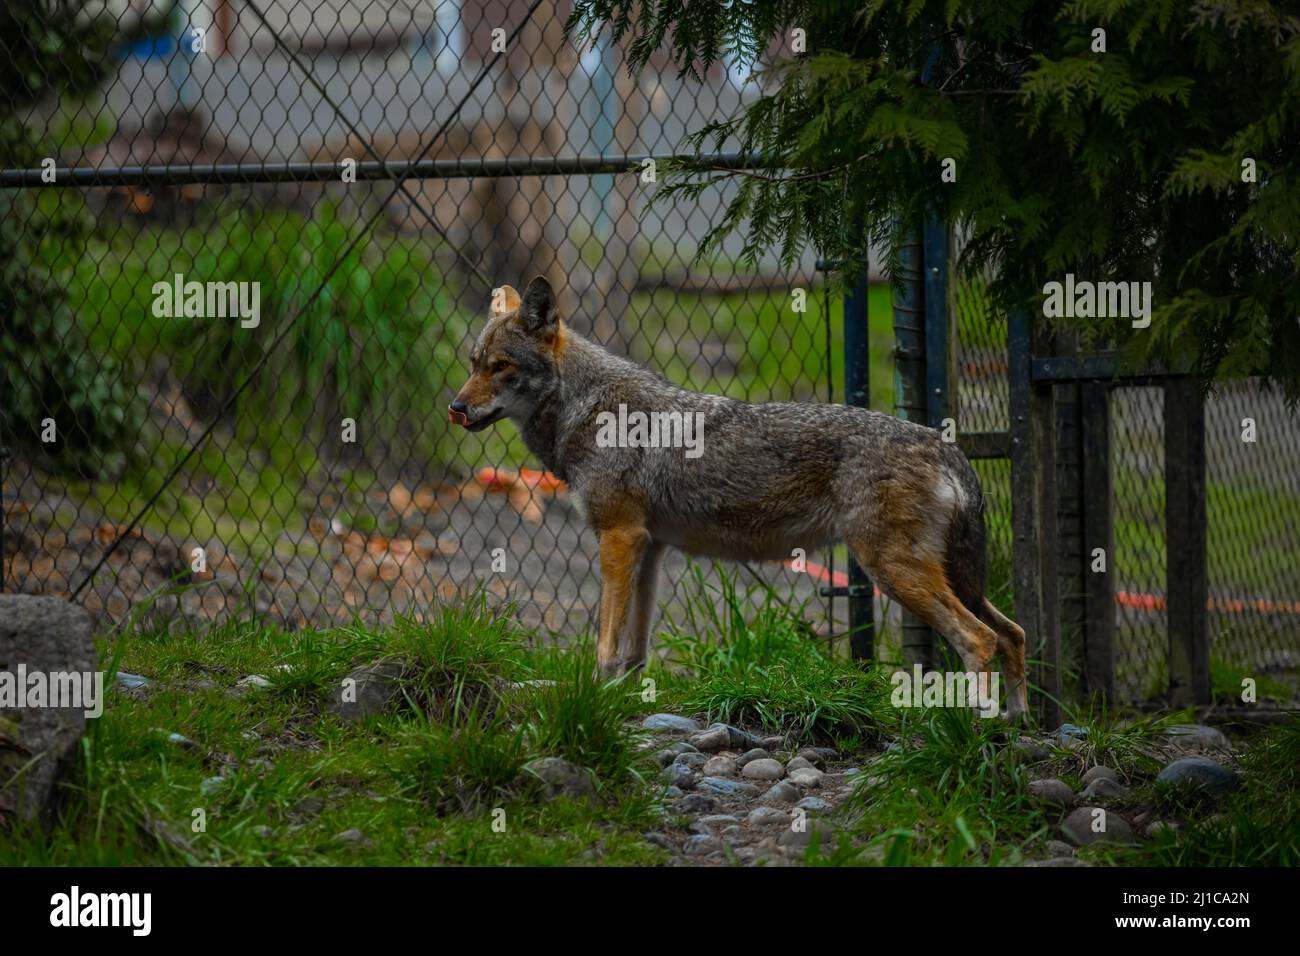 Ci è qualcosa che innerving circa un lupo che si aggira vicino ad una recinzione di collegamento della catena. È come se l'animale studiasse i suoi dintorni, pronto a fare un movimento. T Foto Stock